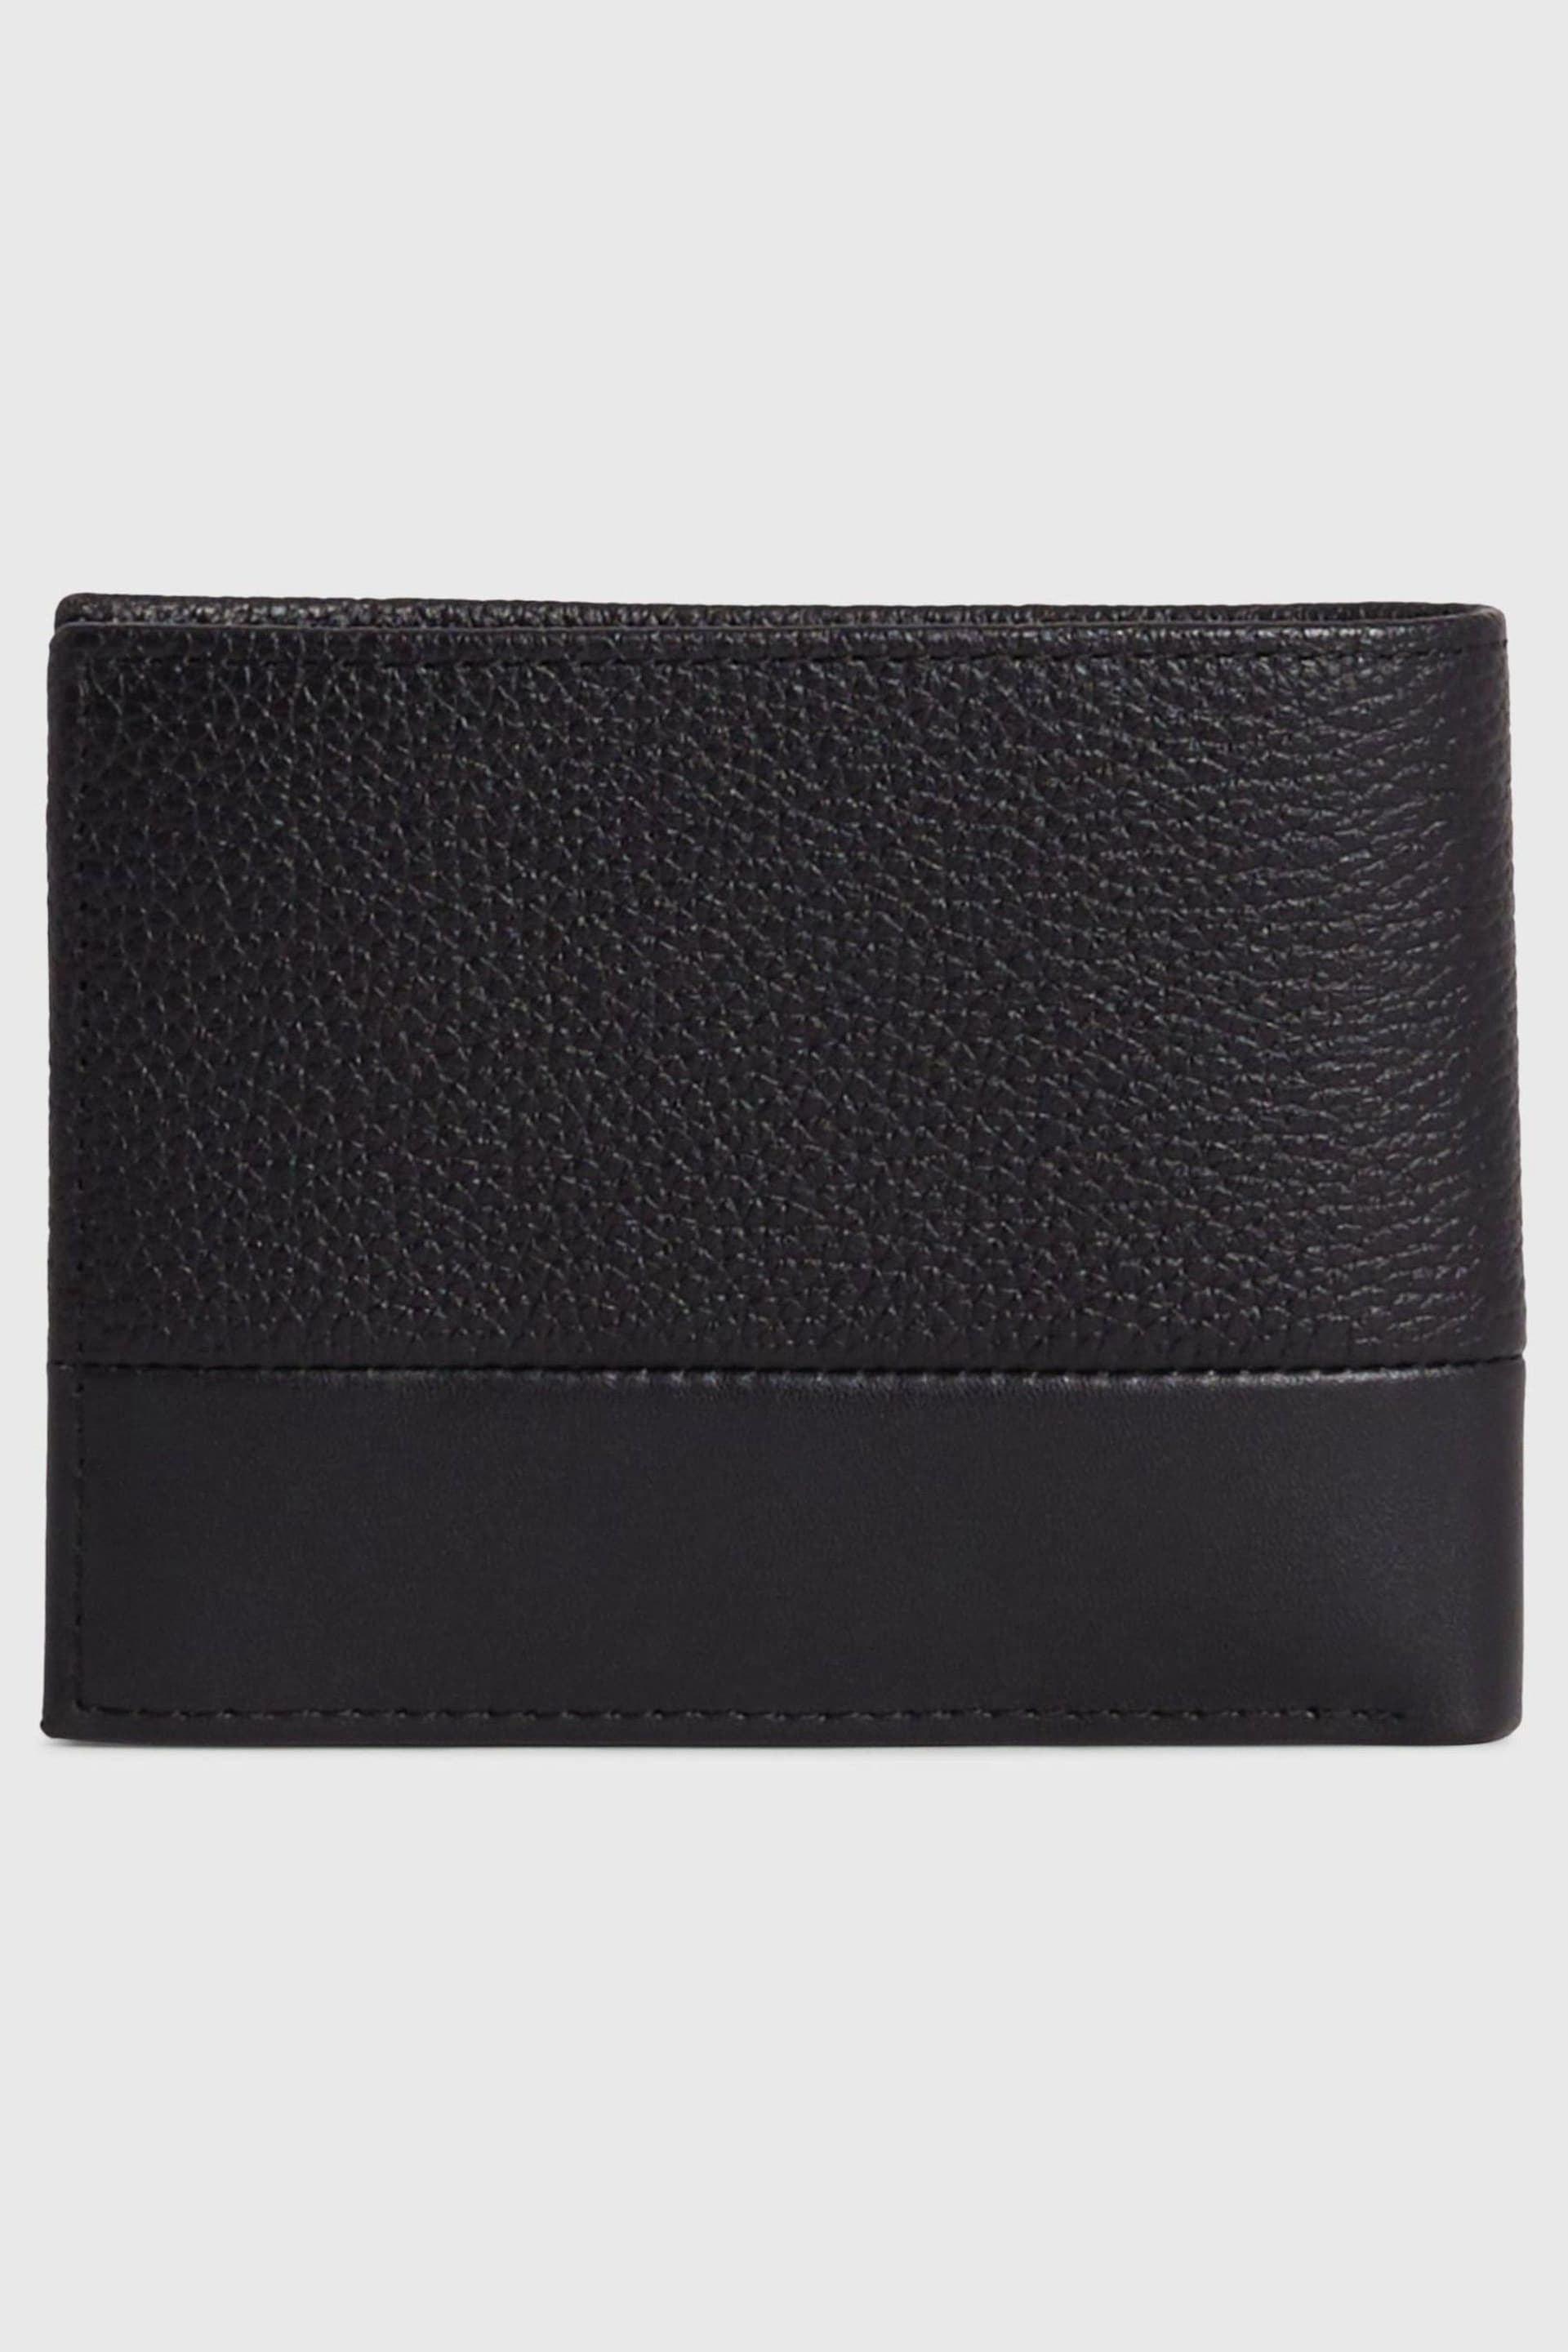 Calvin Klein Black Logo Bifold Wallet - Image 1 of 4